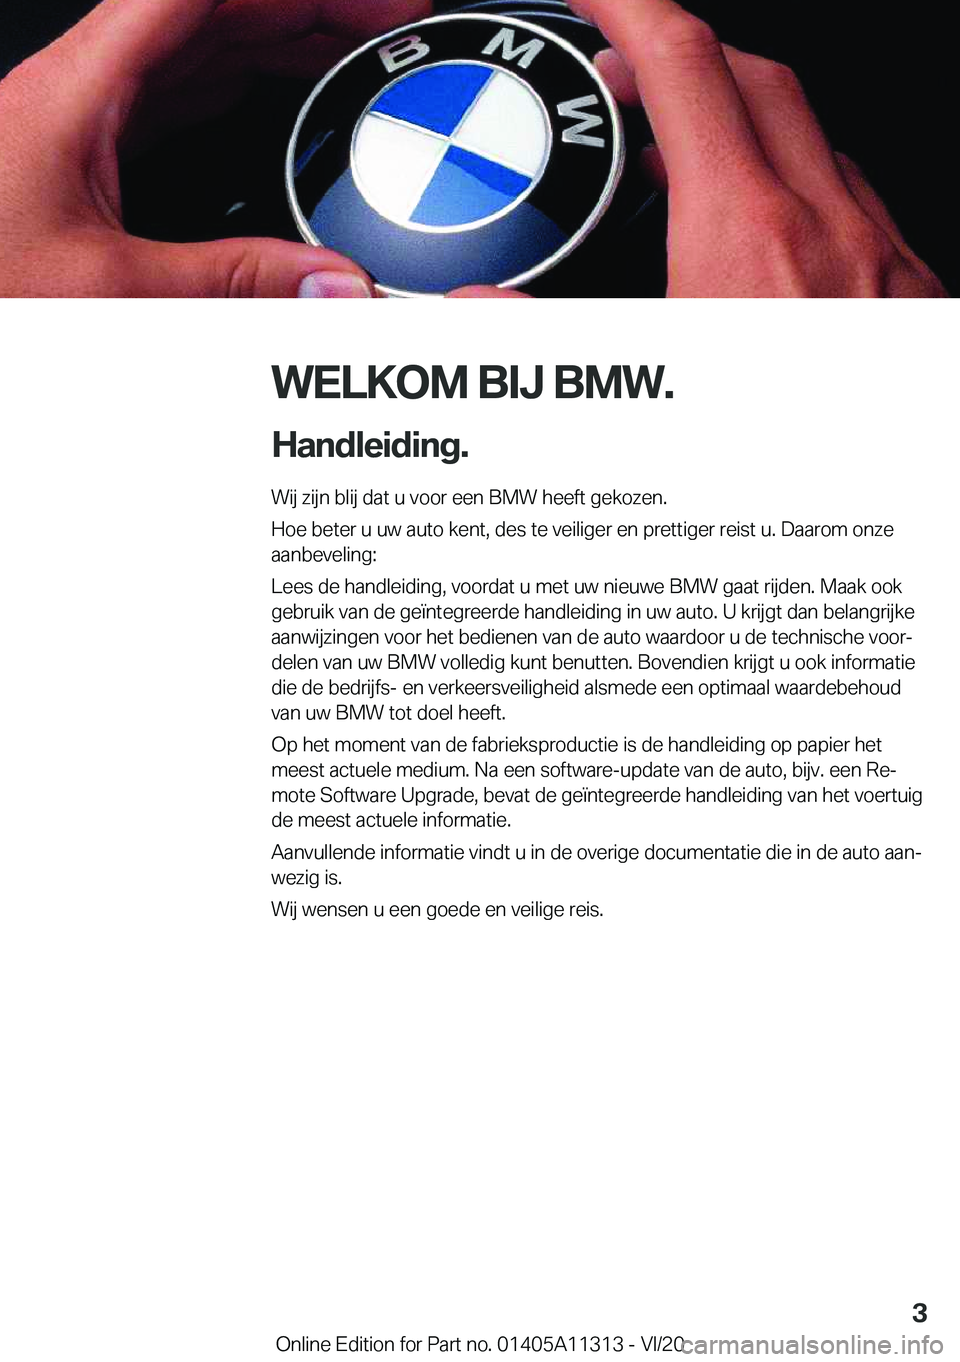 BMW 5 SERIES 2021  Instructieboekjes (in Dutch) �W�E�L�K�O�M��B�I�J��B�M�W�.
�H�a�n�d�l�e�i�d�i�n�g�. �W�i�j��z�i�j�n��b�l�i�j��d�a�t��u��v�o�o�r��e�e�n��B�M�W��h�e�e�f�t��g�e�k�o�z�e�n�.
�H�o�e��b�e�t�e�r��u��u�w��a�u�t�o��k�e�n�t�